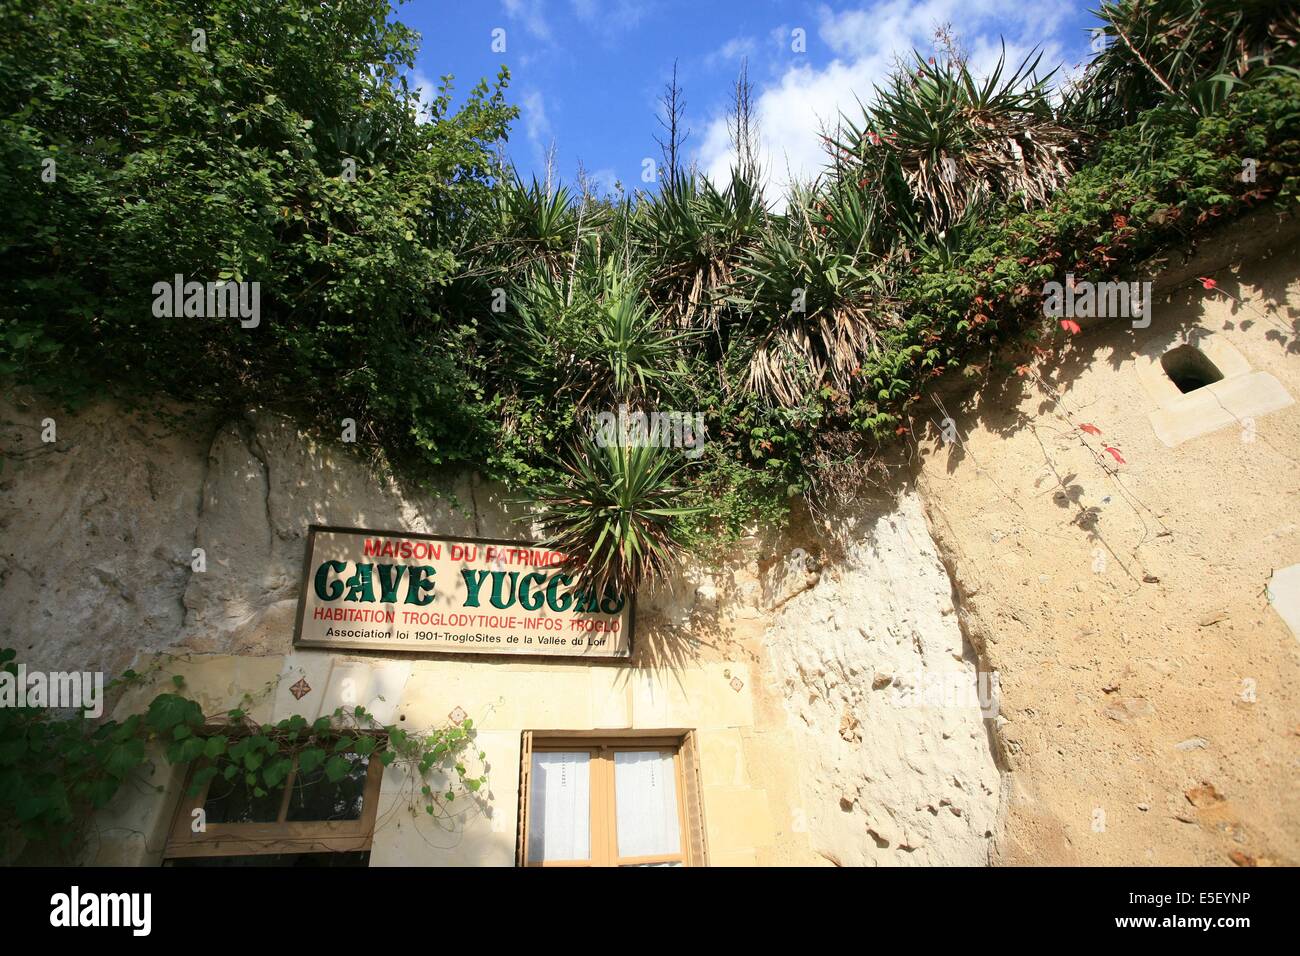 France, centre, loir et cher, troo, cite troglodyte, cave cave yuccasreconstitution d'un habitat troglodyte Stock Photo